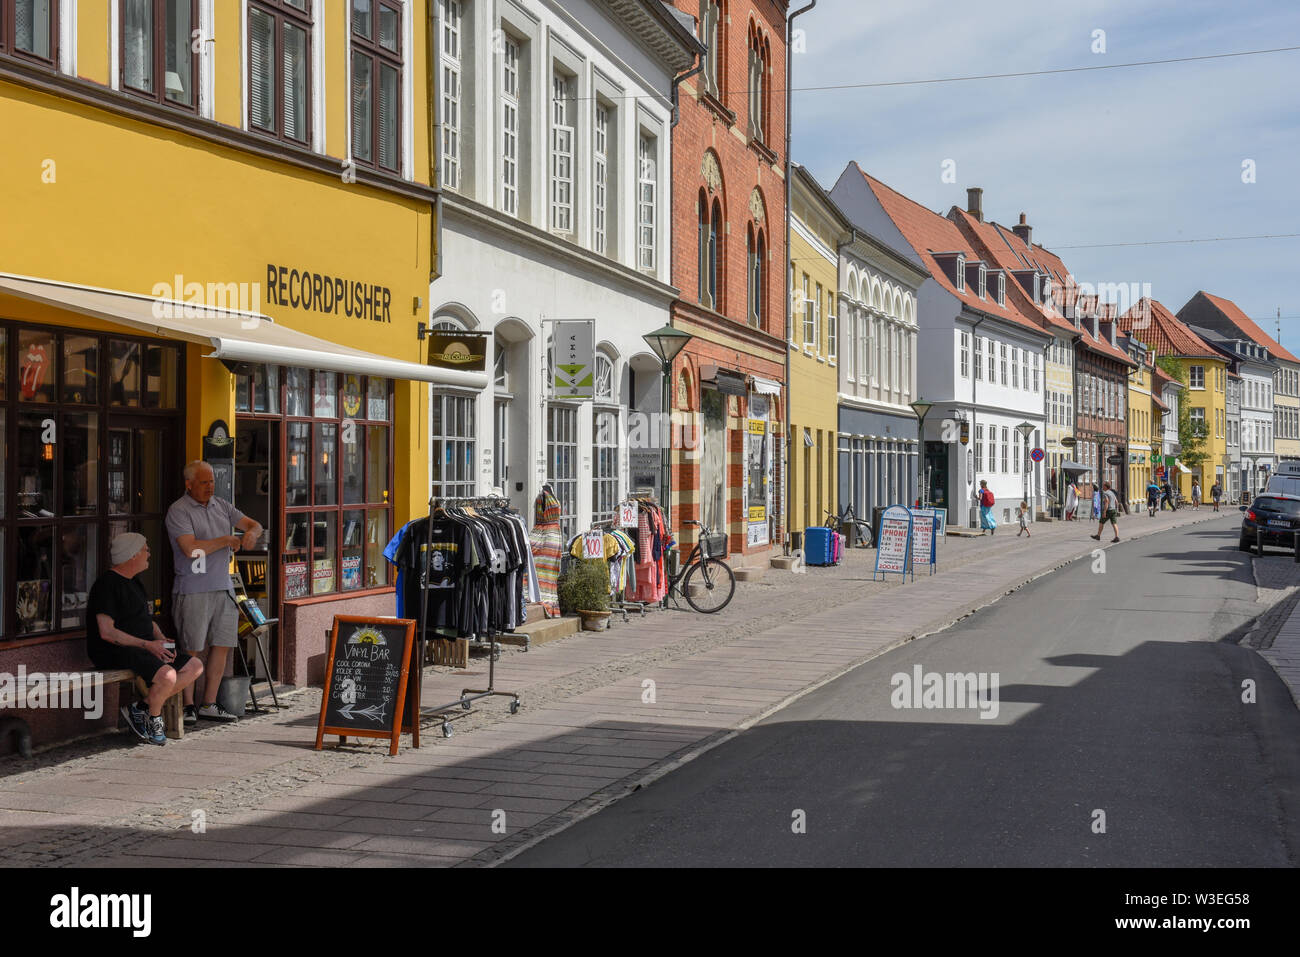 Odense, Dänemark - 24 Juni 2019: Menschen einkaufen in den alten Häusern von Odense in Dänemark Stockfoto